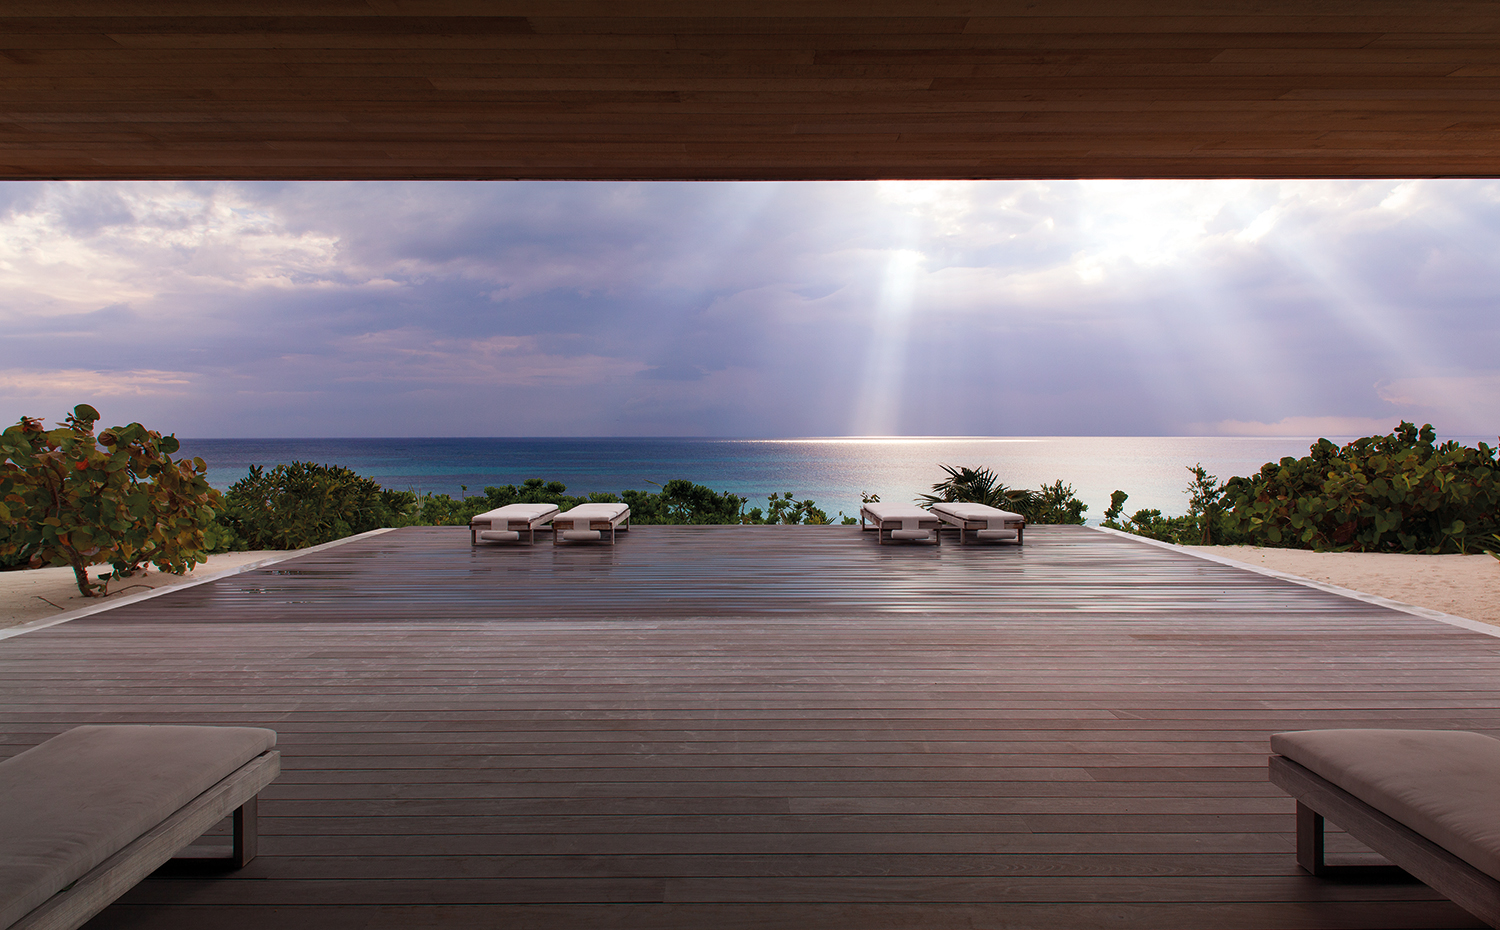 afterstorm. El excepcional mirador de la terraza de madera proporciona agradables baños de sol y espléndidas vistas al atardecer